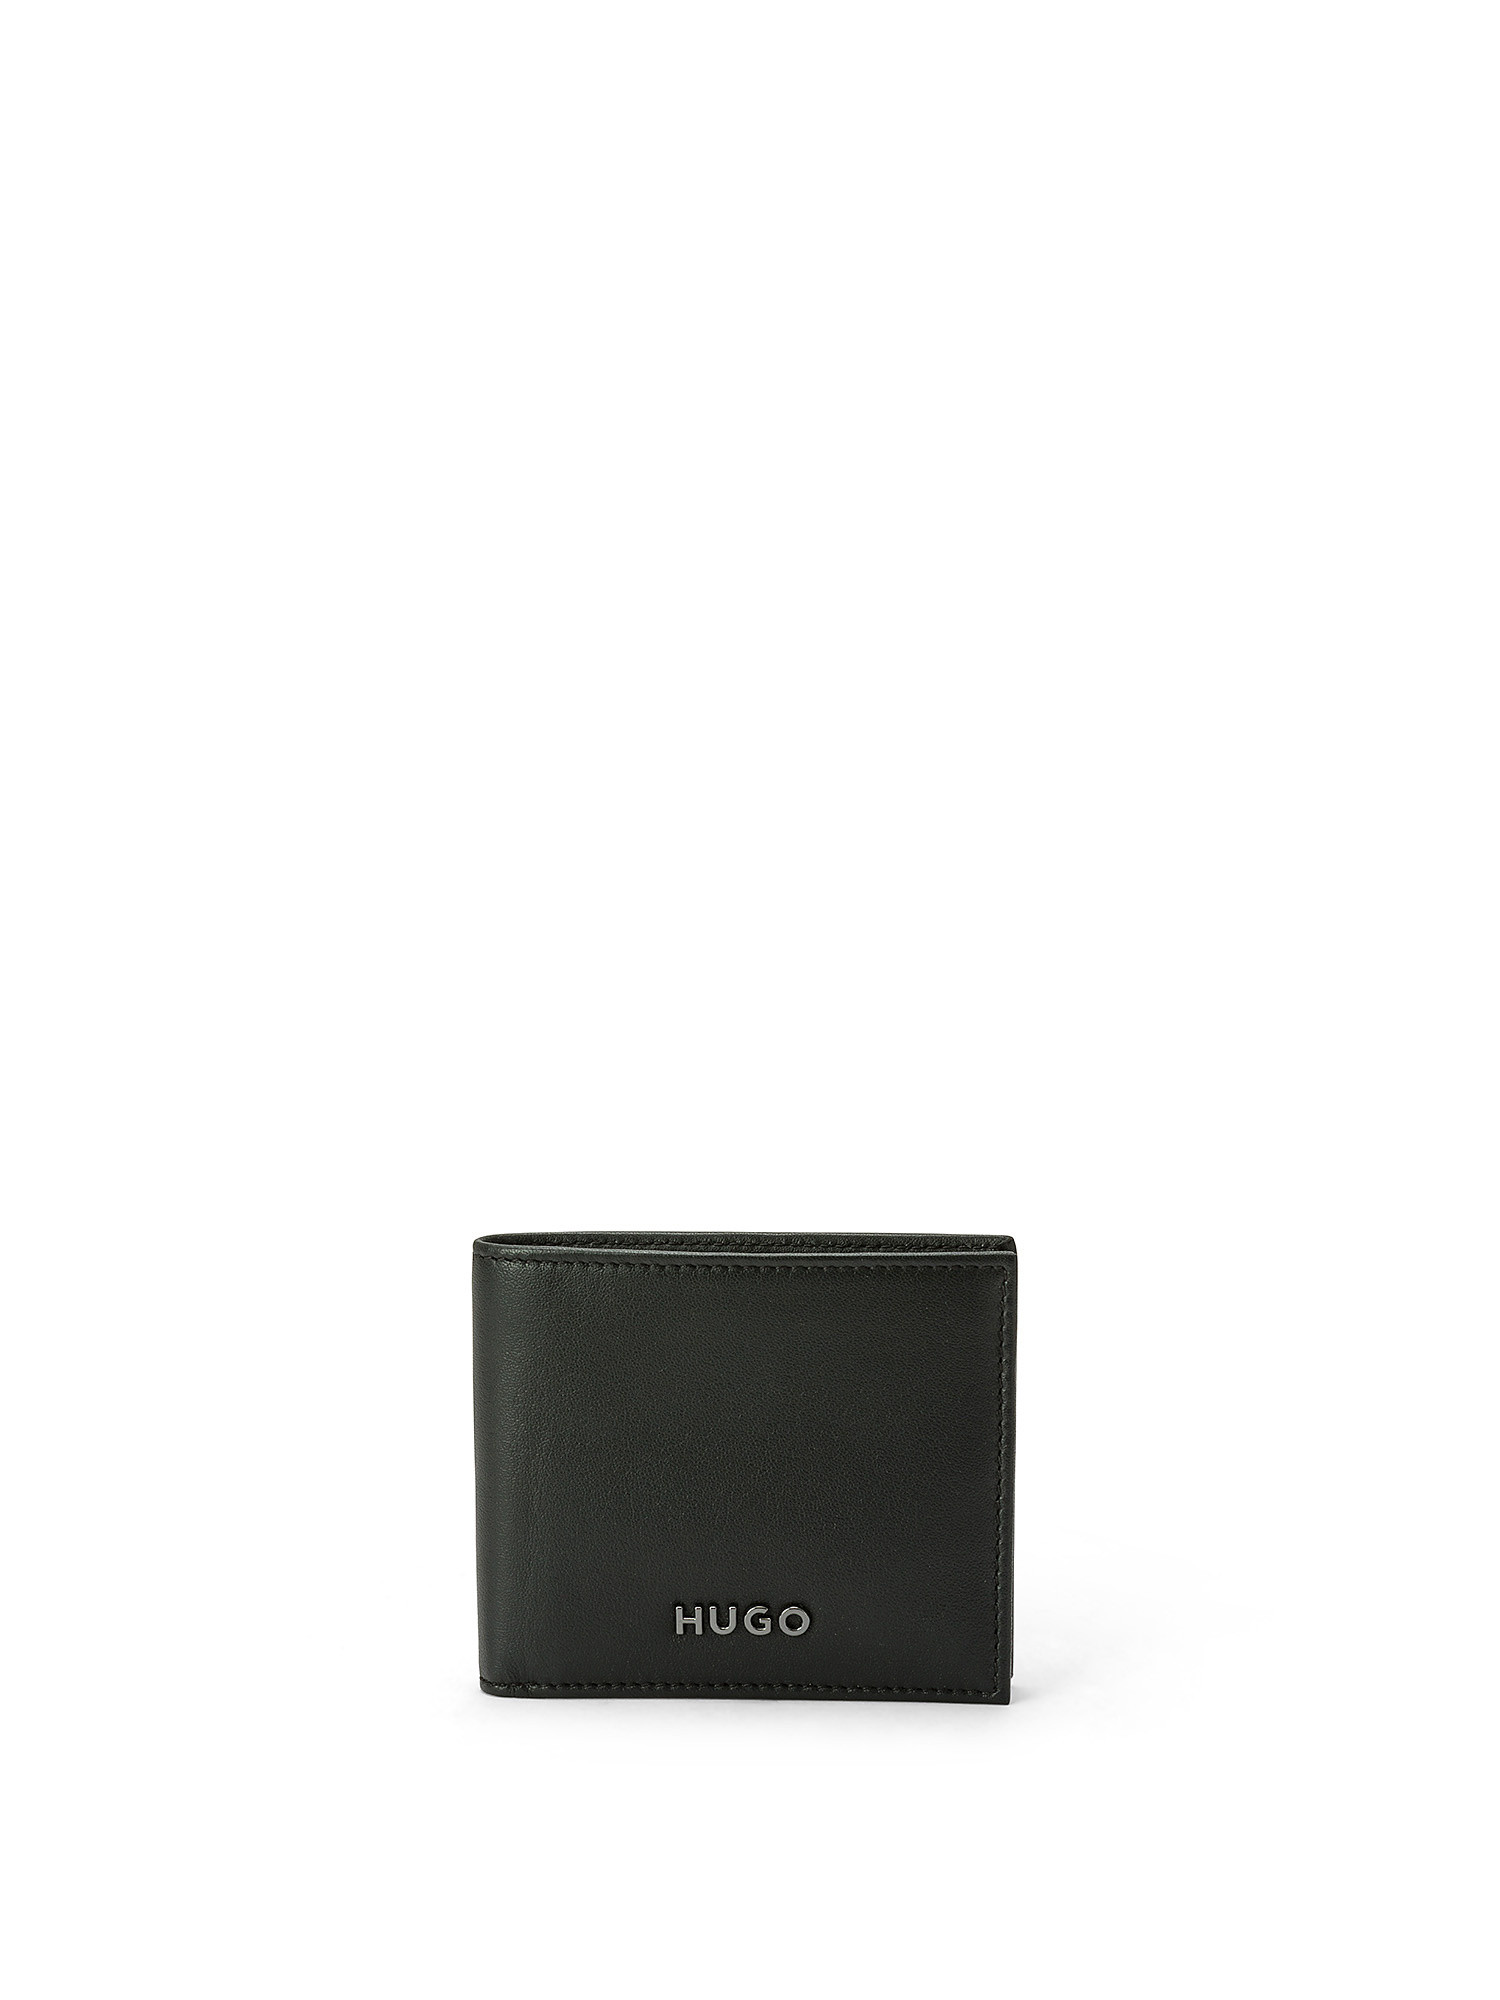 Hugo - Leather wallet, Black, large image number 0